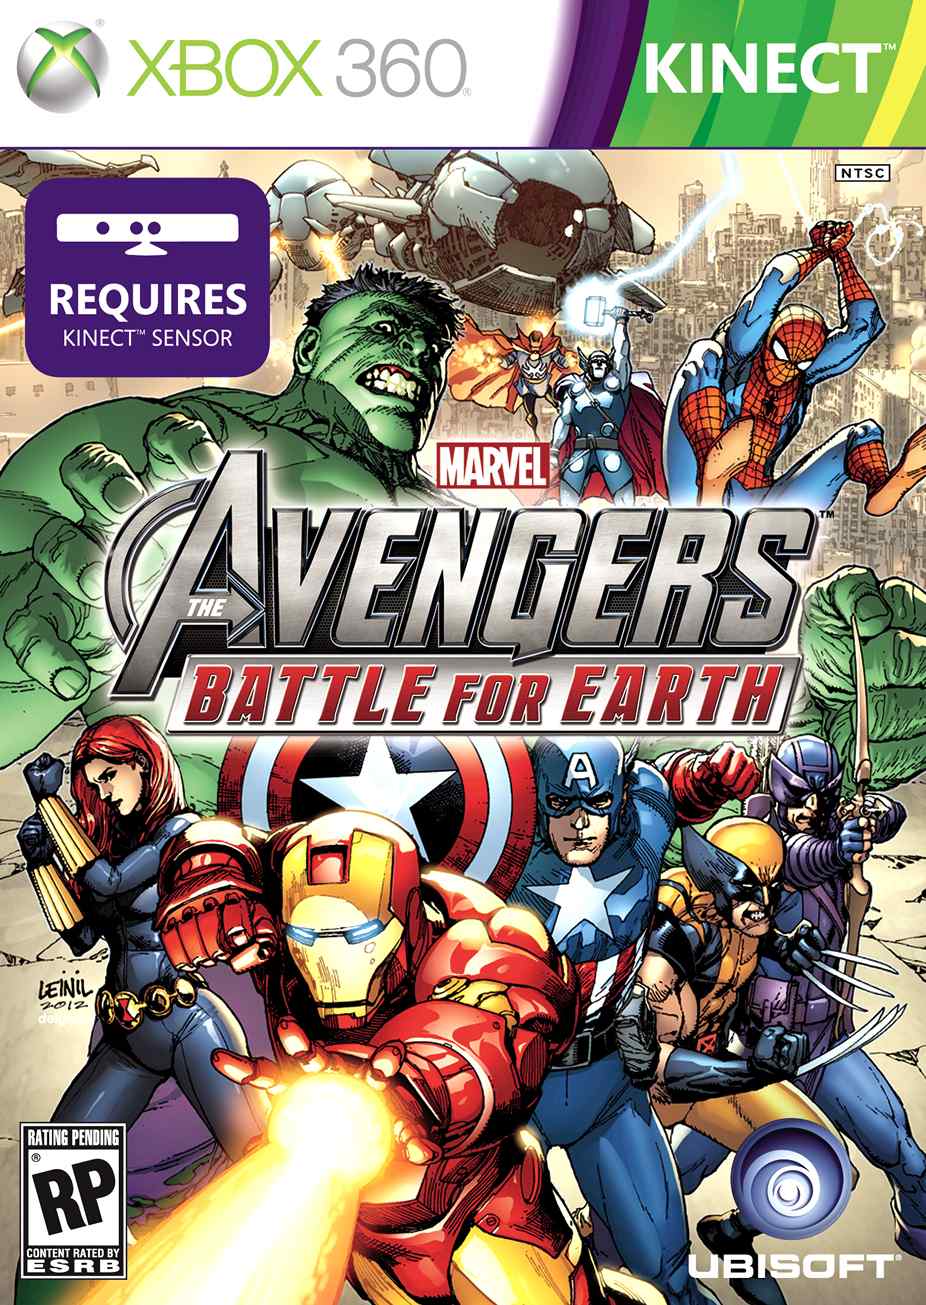 Marvel's The Avengers: Battle For Earth [ENG] (RegionFree) (LT+3.0/15574) (2012) [KINECT] [Xbox 360]